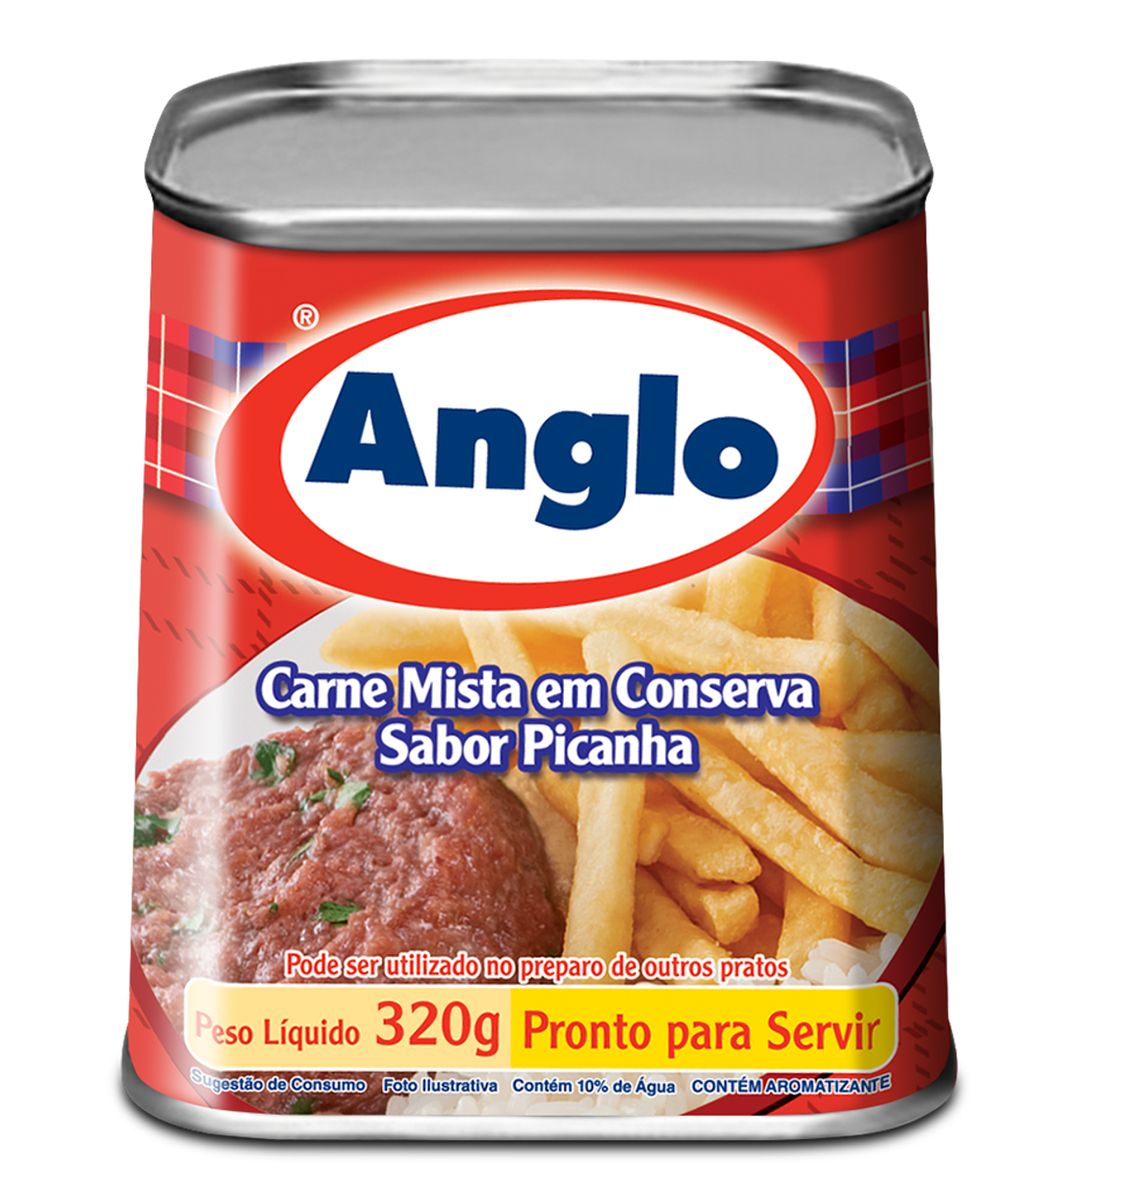 Carne Mista em Conserva Anglo Sabor Picanha Lata 320g